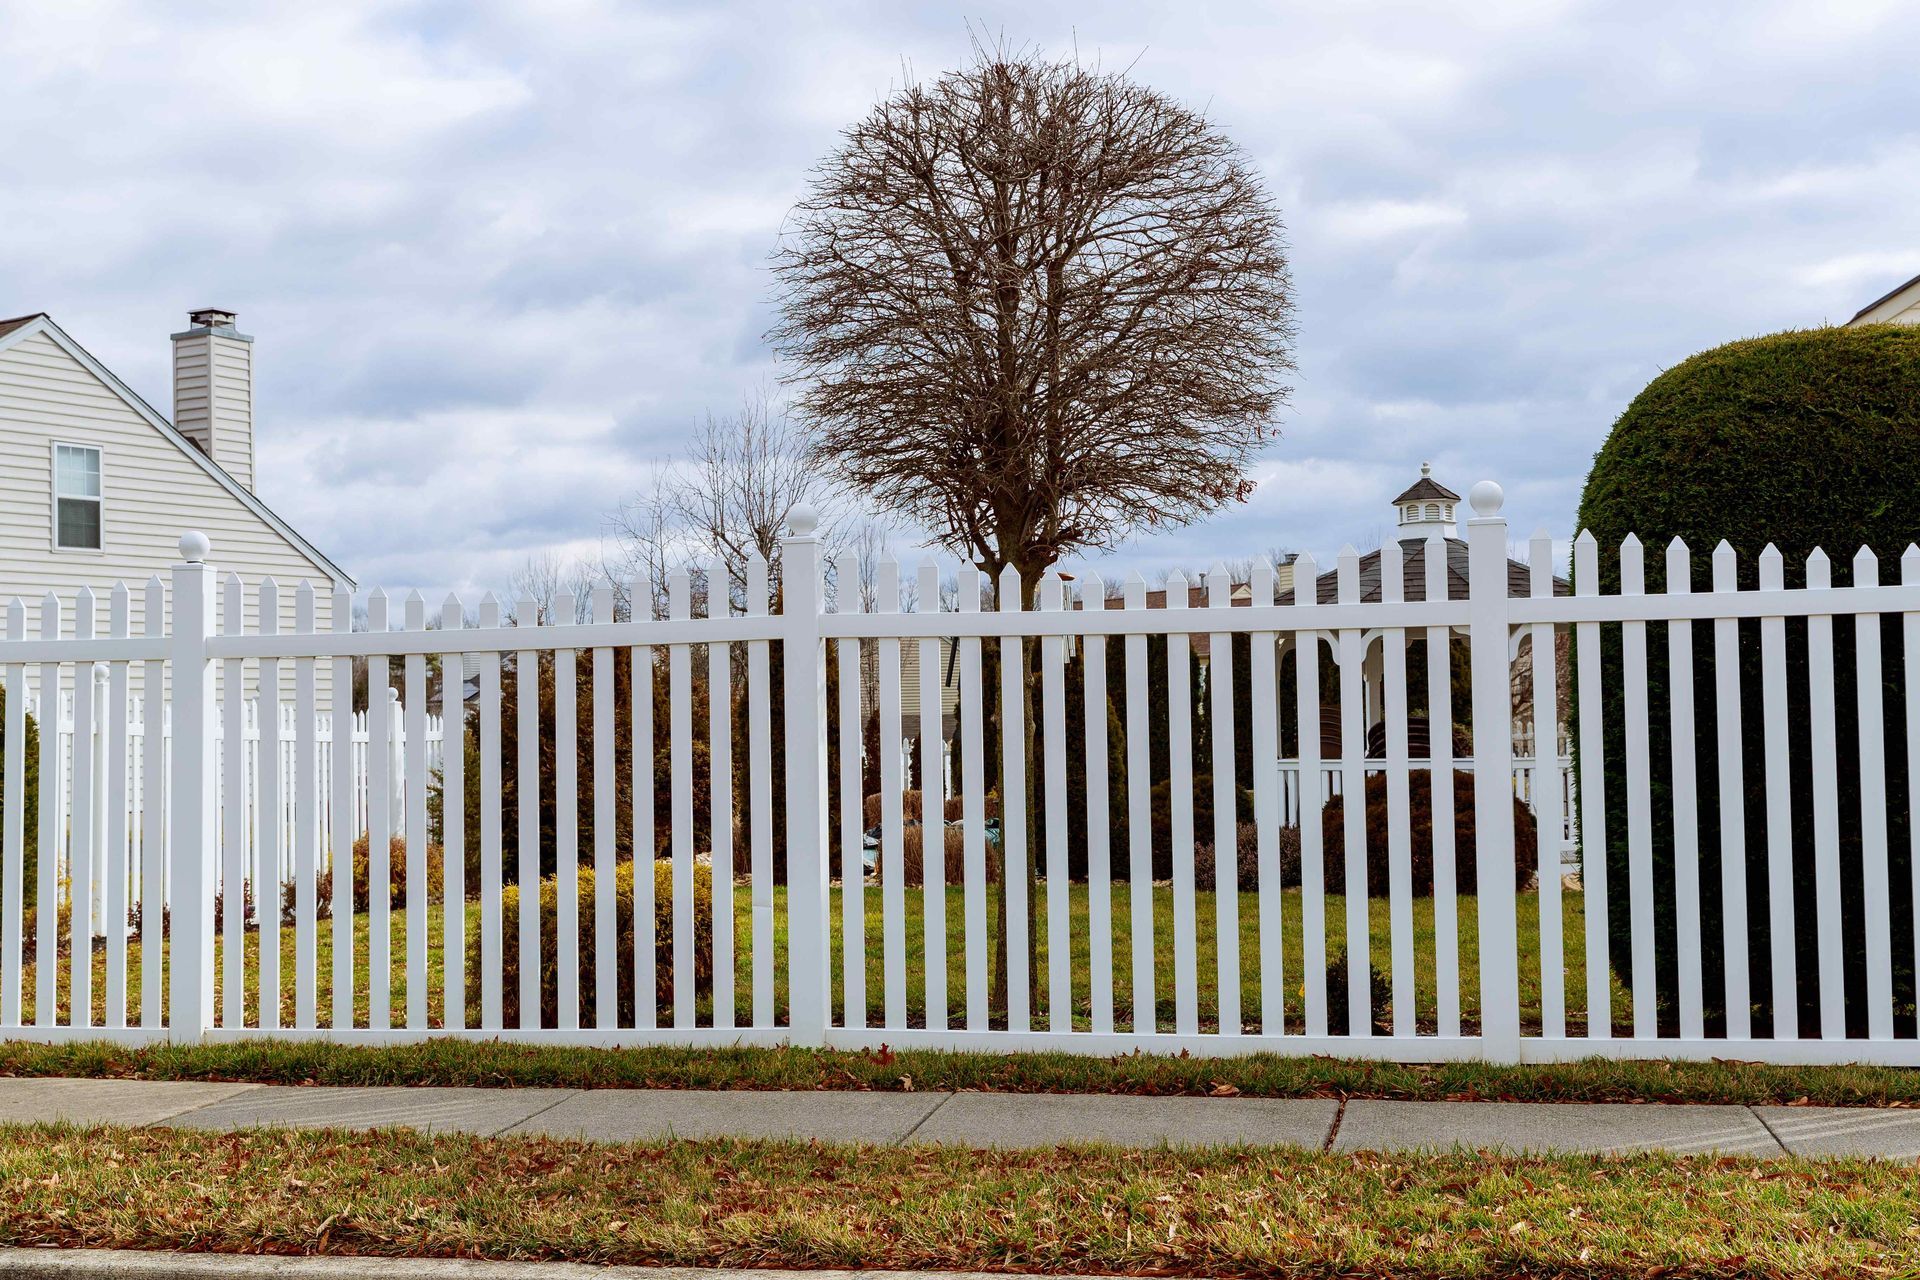 Decorative white wood picket fence